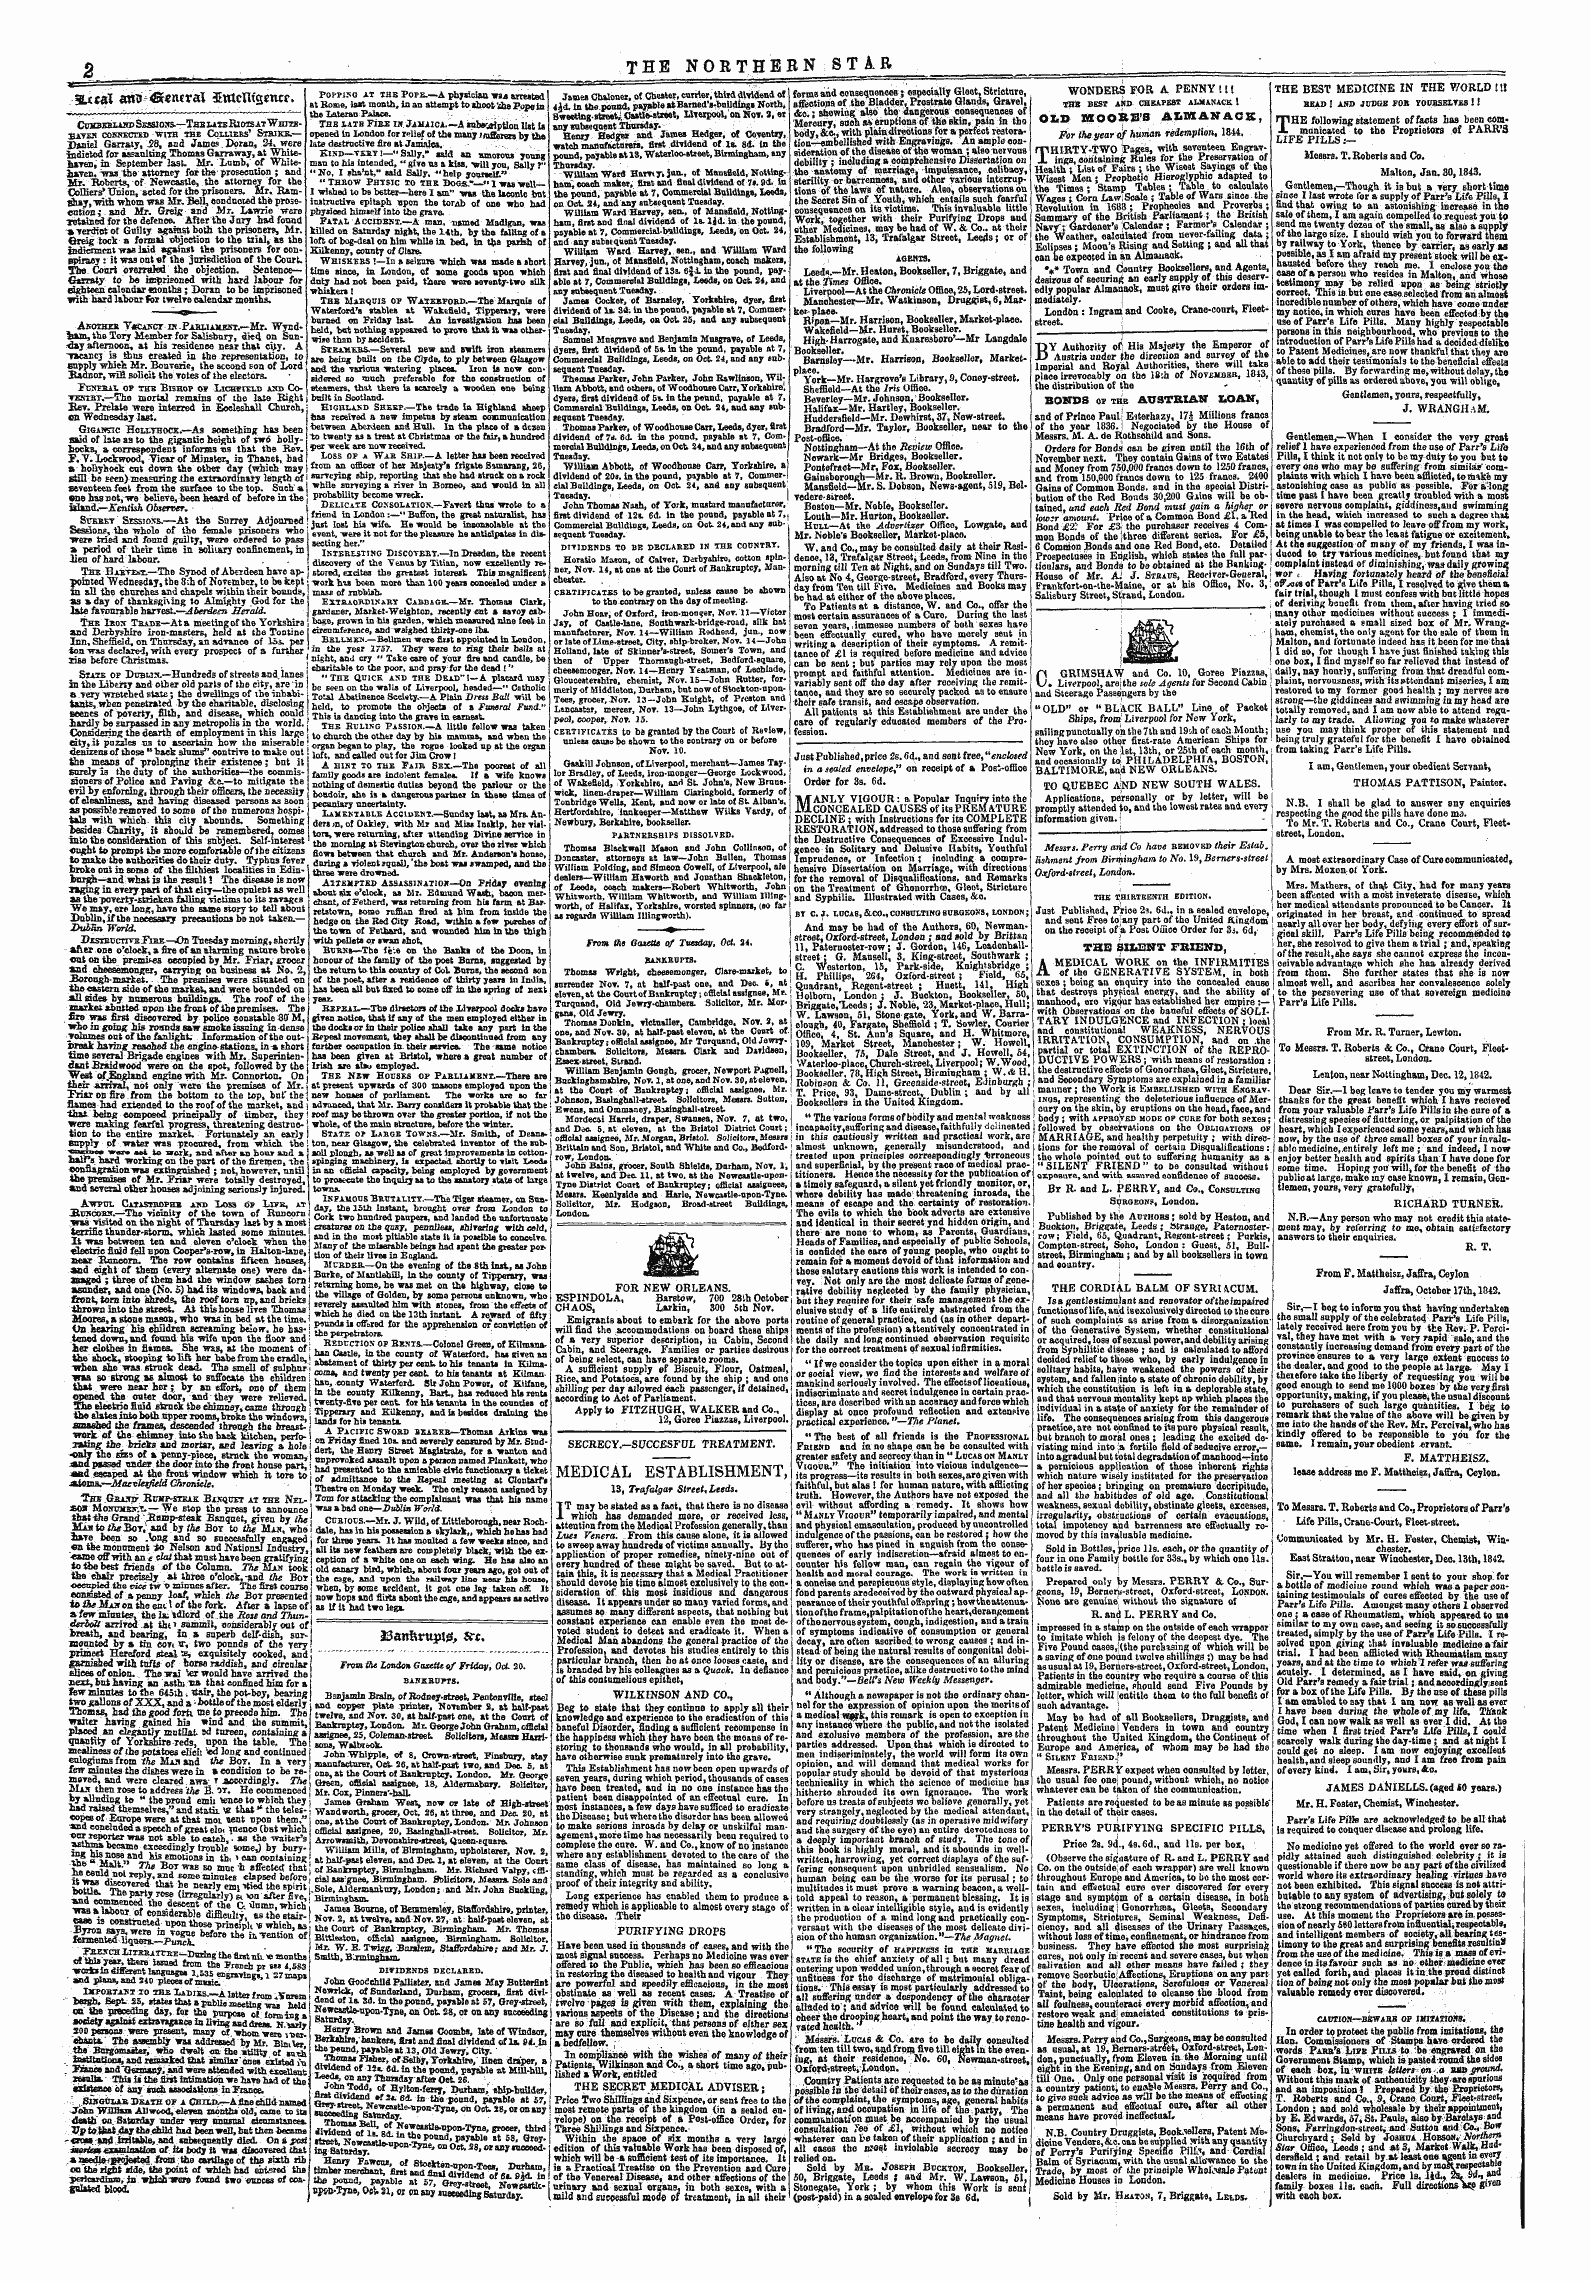 Northern Star (1837-1852): jS F Y, 5th edition - 3uca$ Att* 43ten*Rax 3£Wteiu£*Ttc?